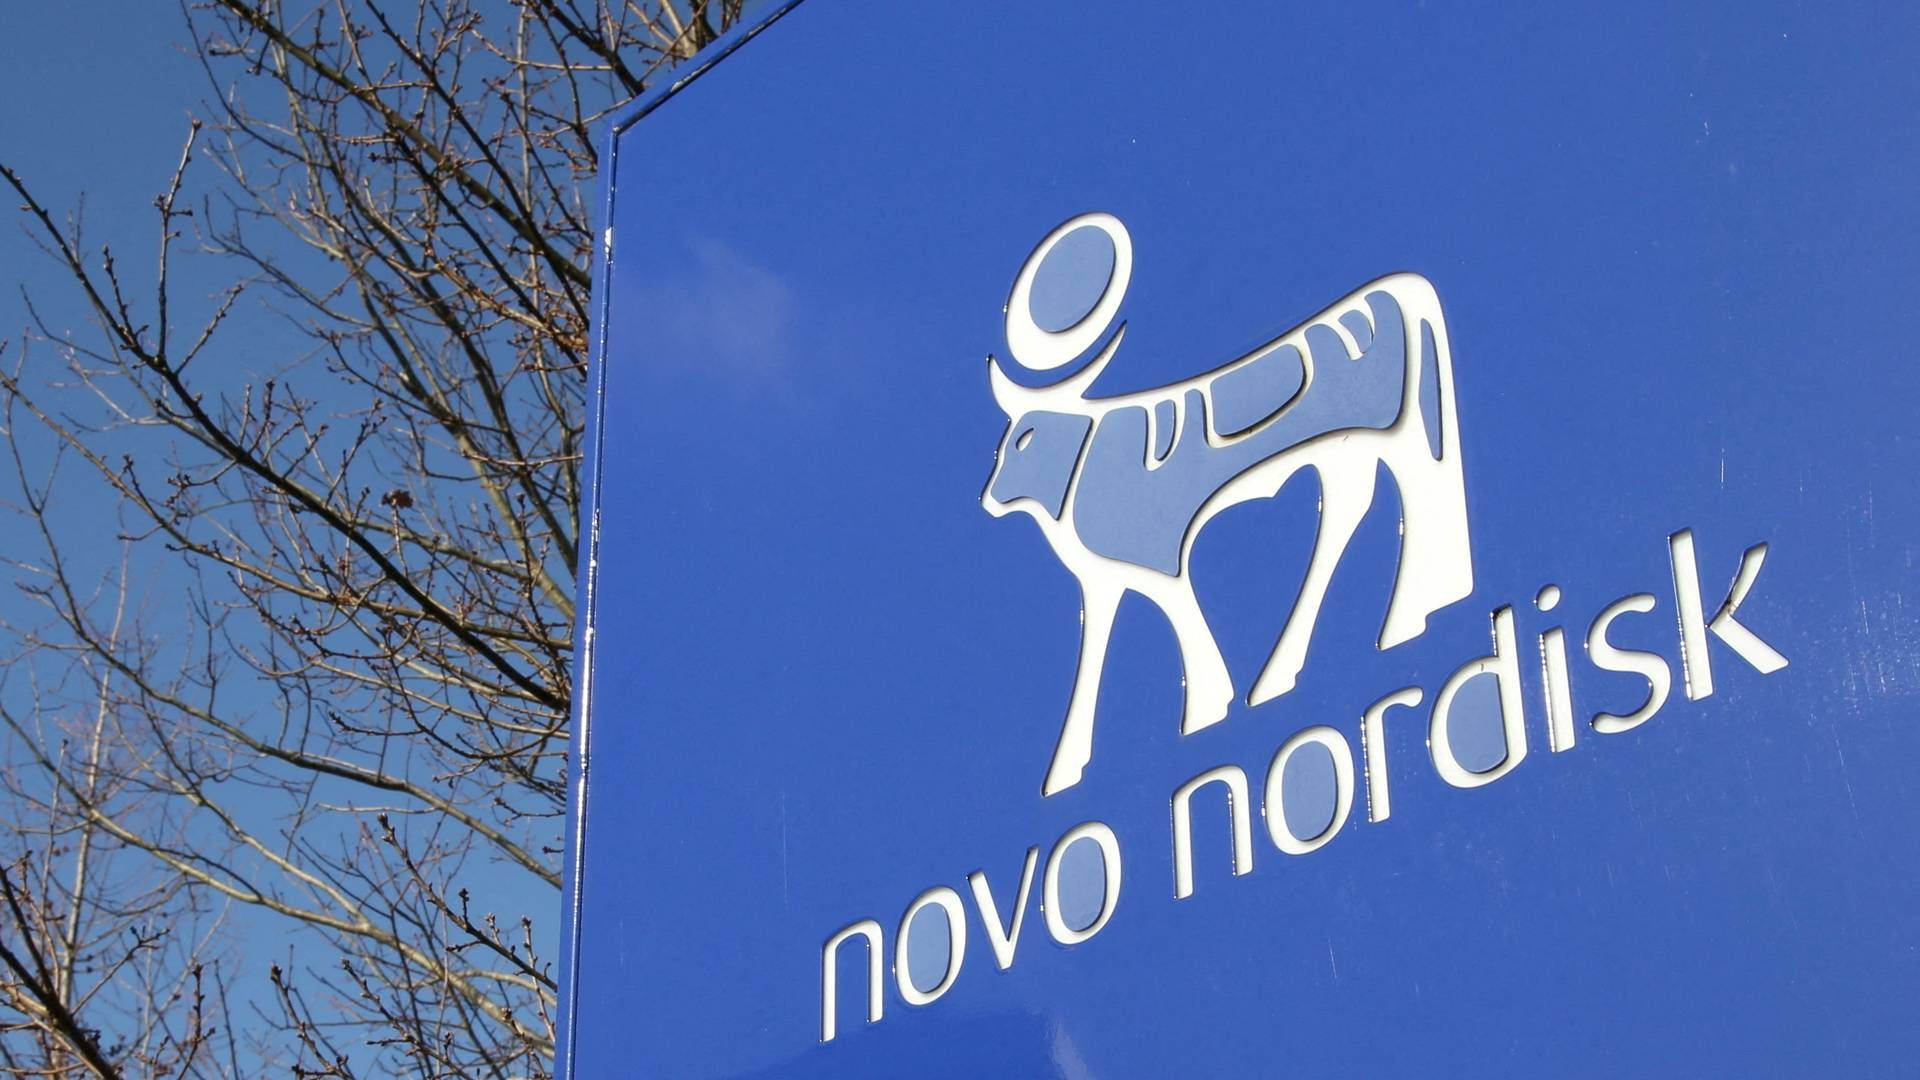 ANSETTELSESSTOPP: Novo Nordisk innfører ansettelsesstopp for å beskytte bedriftskulturen. | Foto: Tom Little